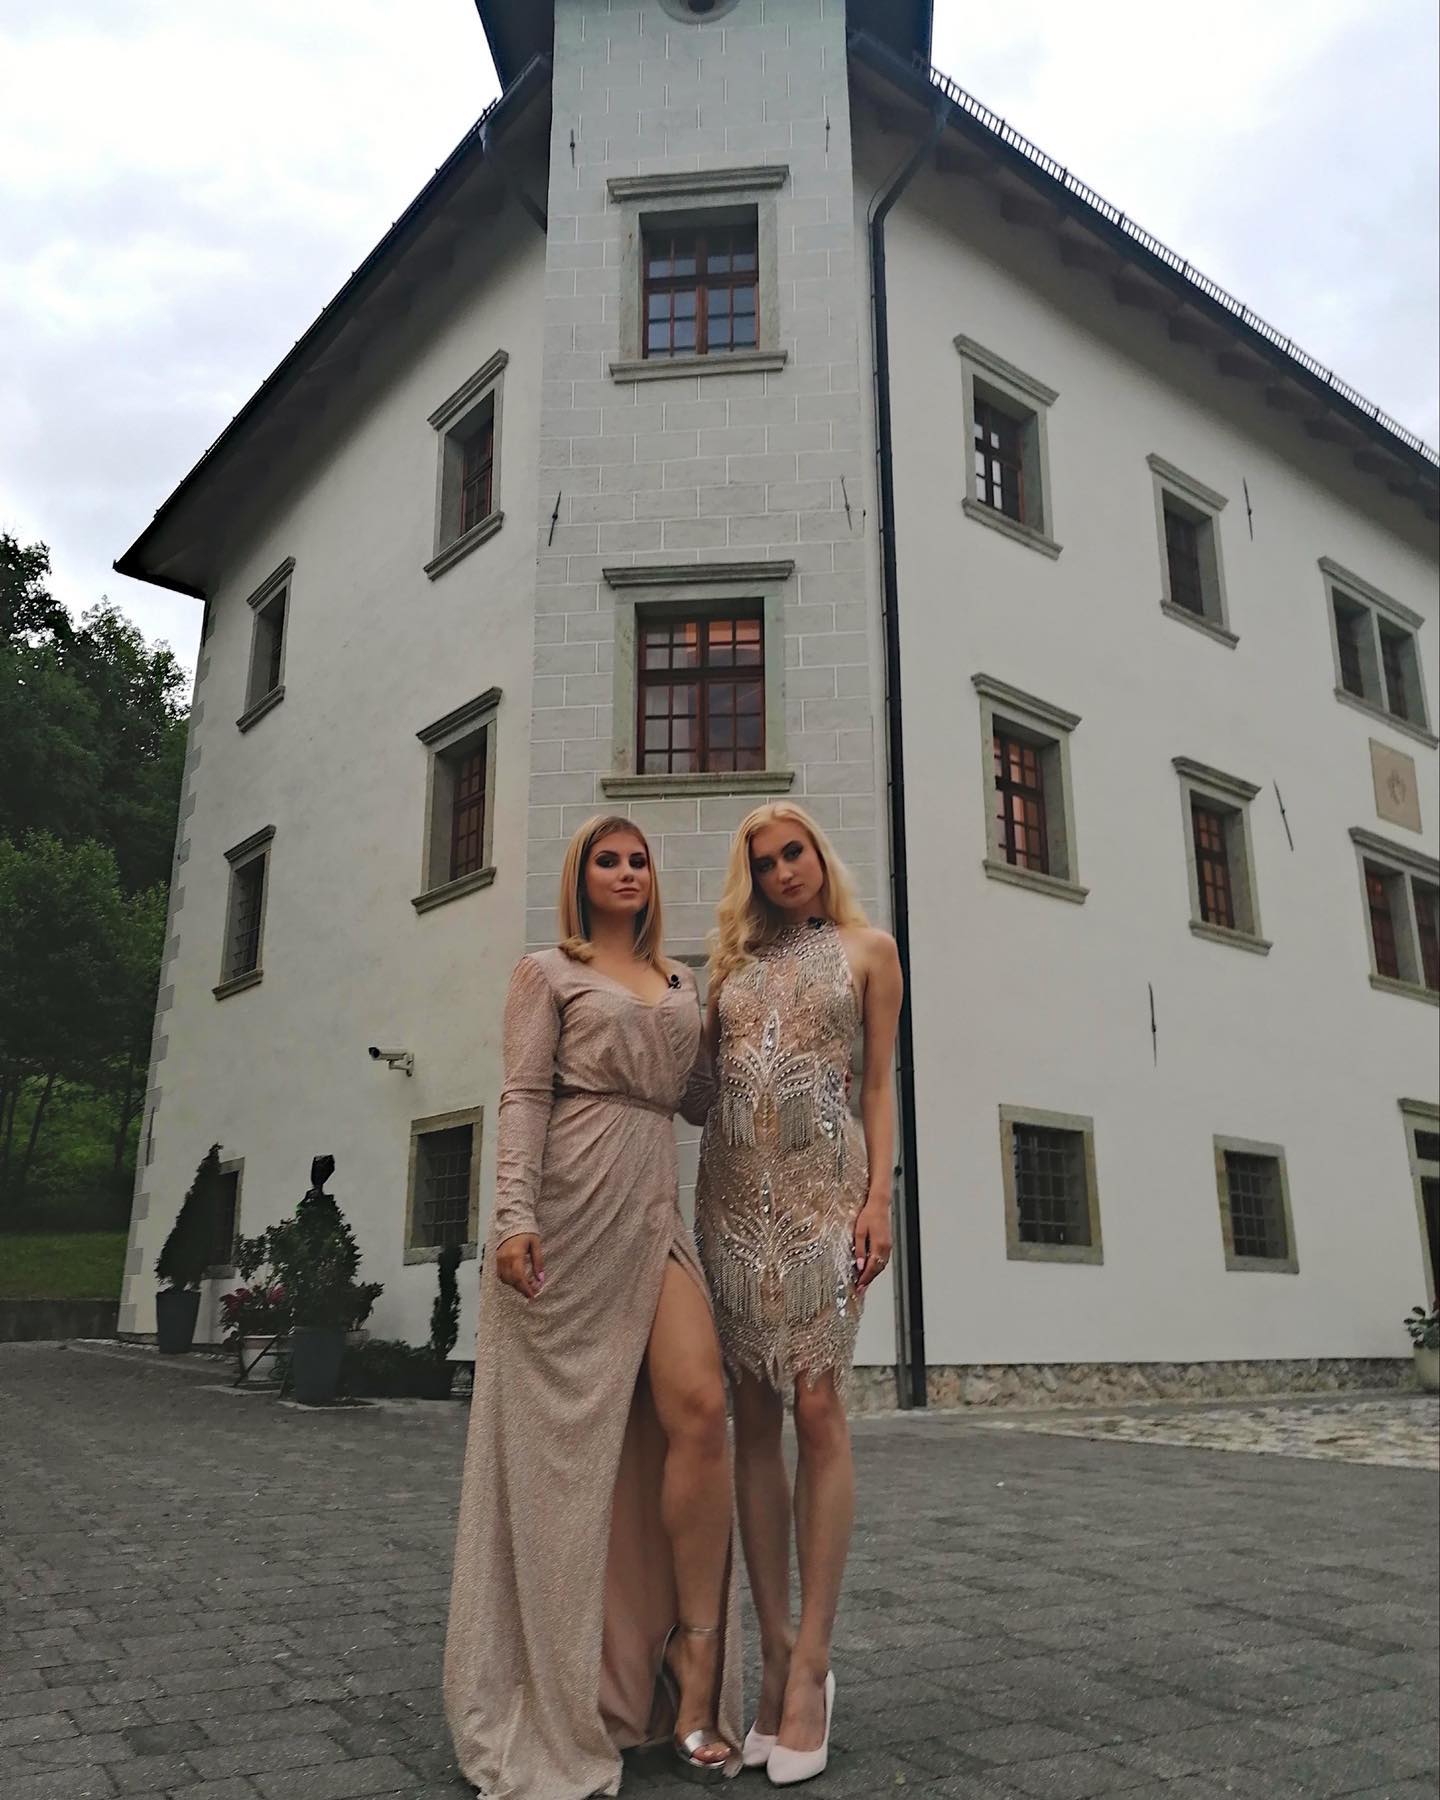 Suki in Eva Luna pred izkločitvijo. Vir: Instagram